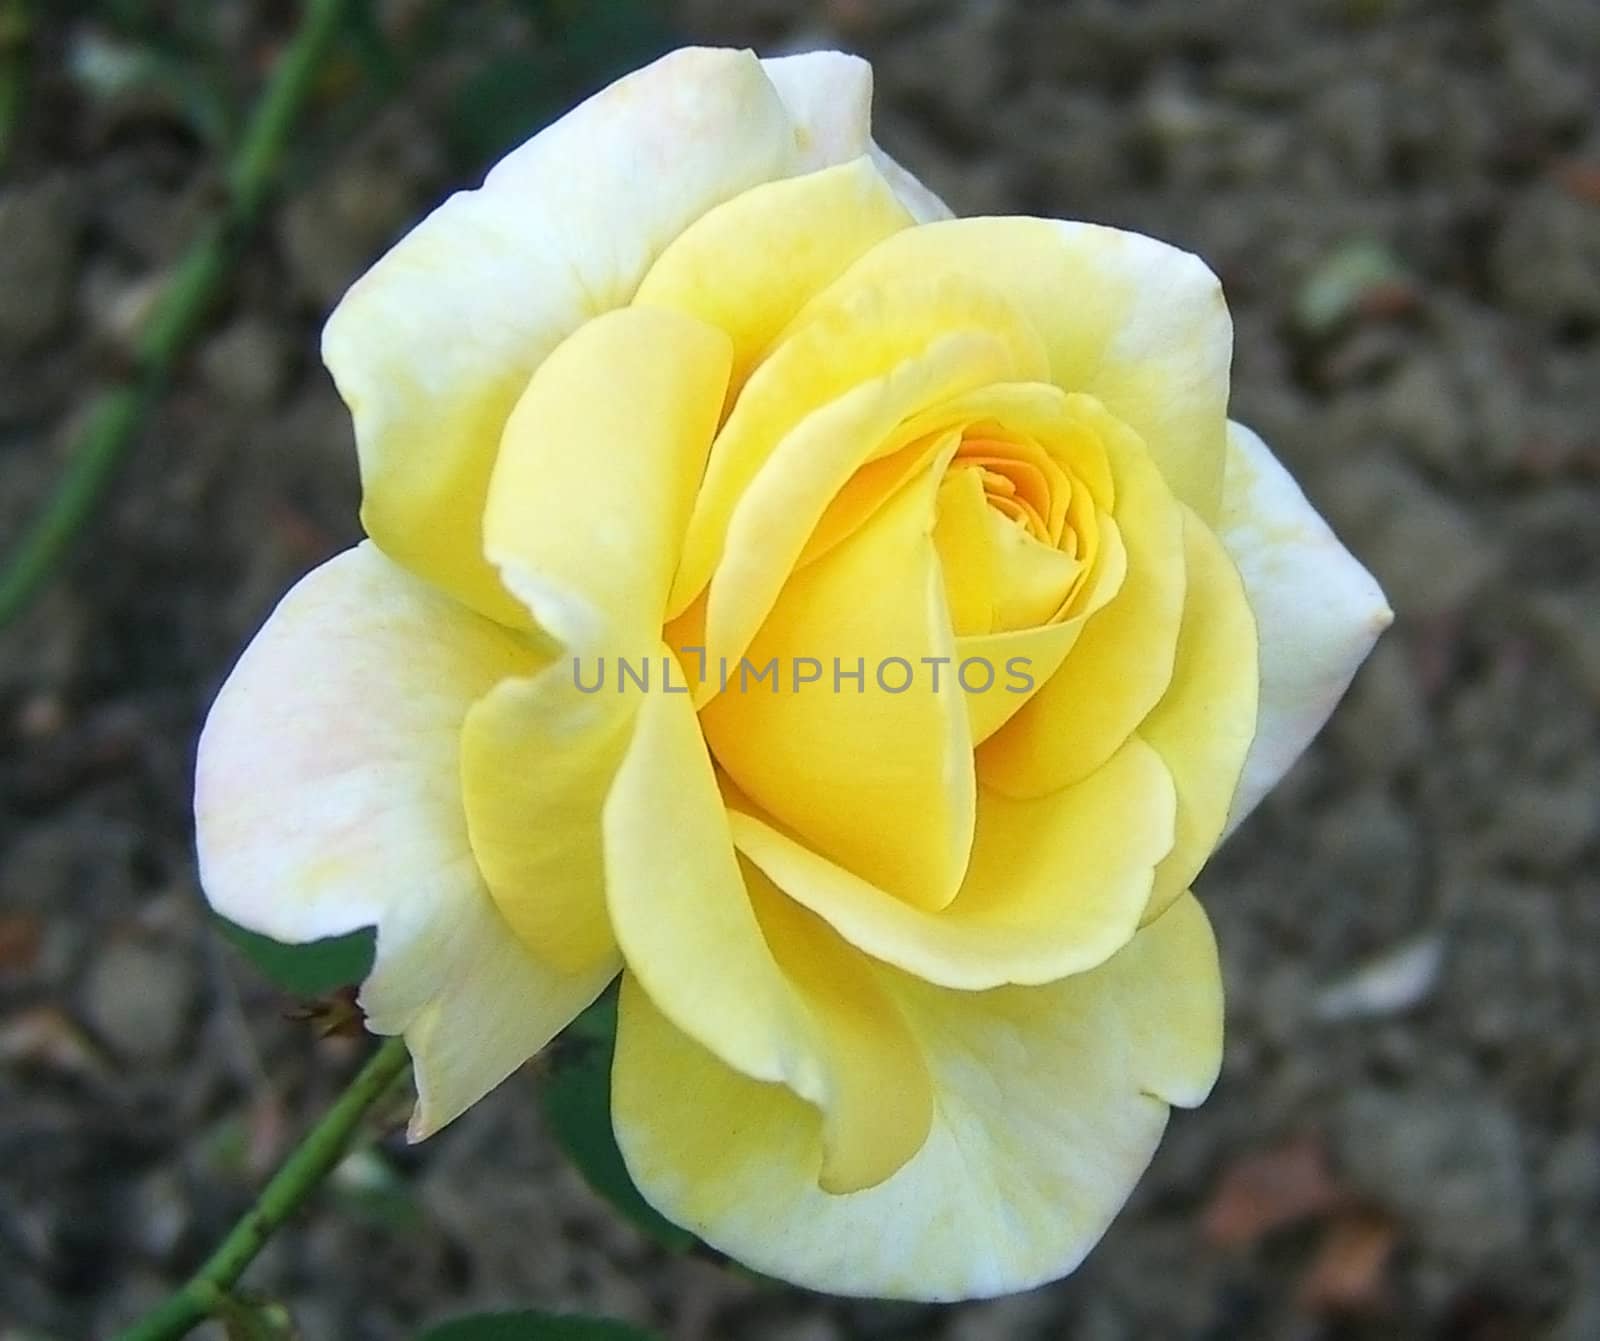 ZHeltaya rose, flower, background, texture, type, gentile colour, flora, plant, petal, beauty